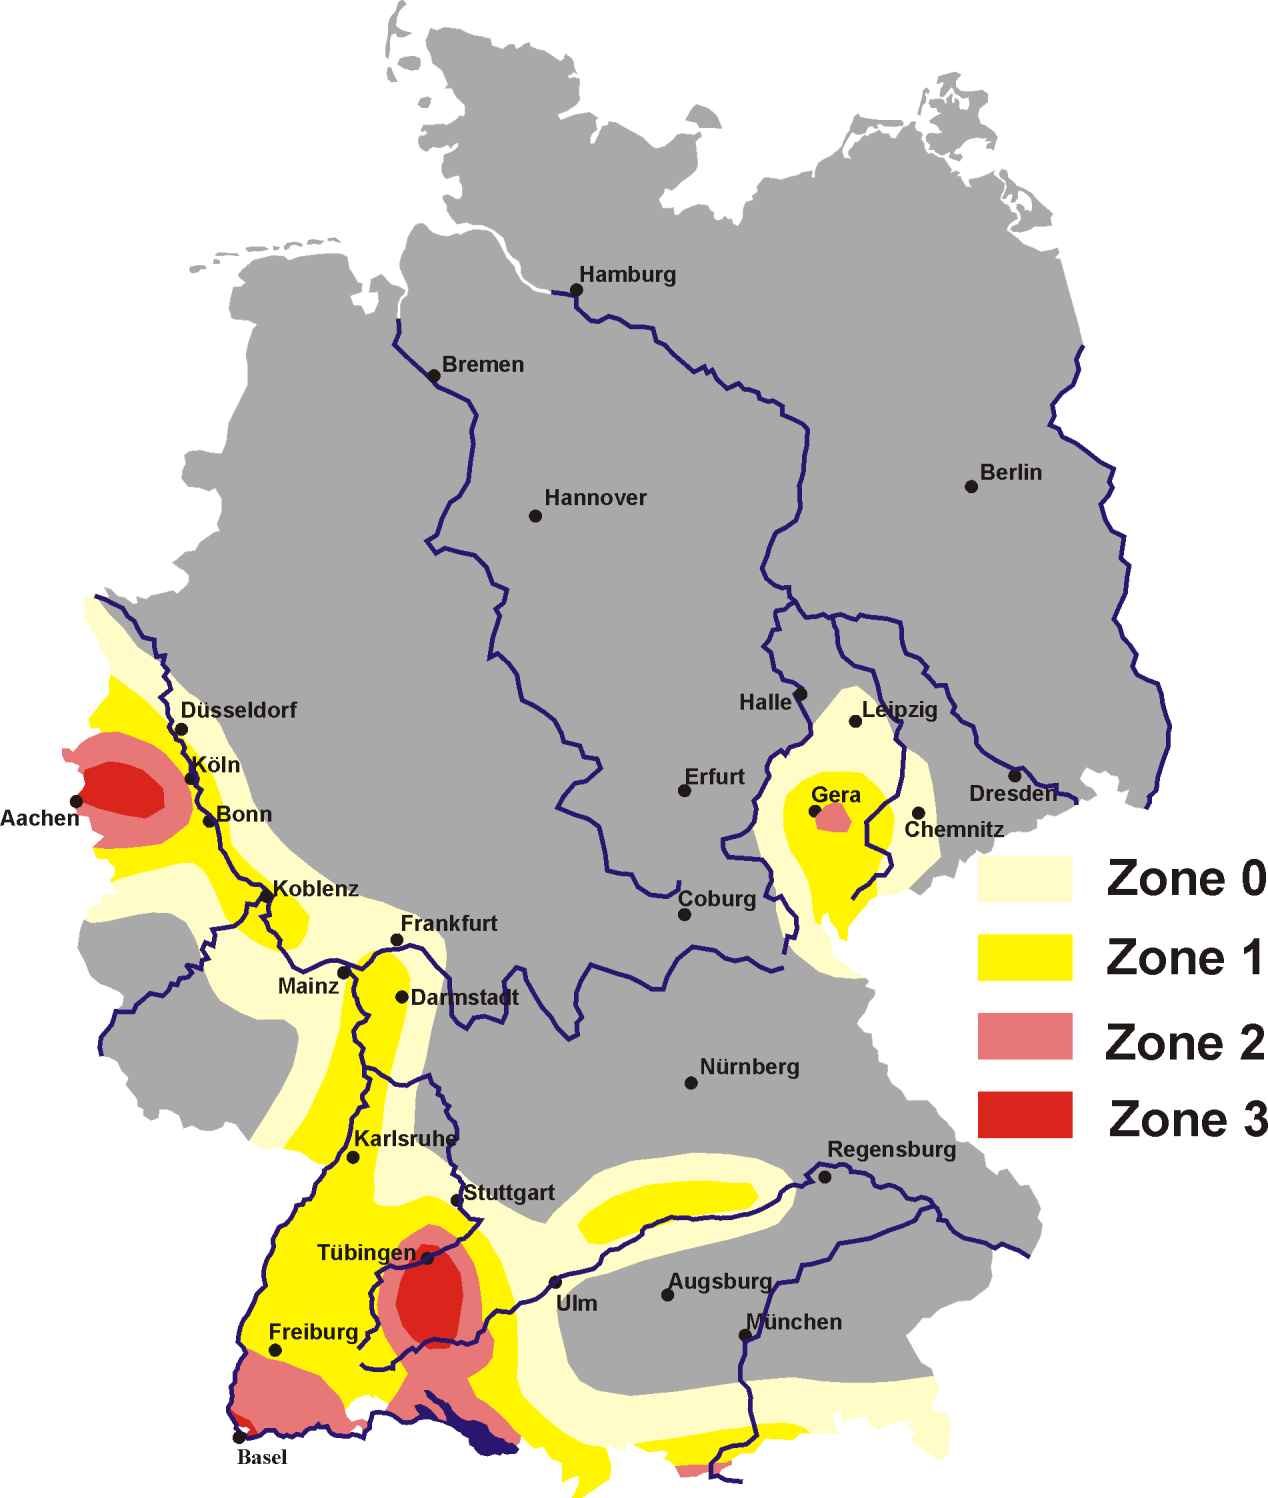 Erdbebenzonen nach DIN 4149 (Quelle: